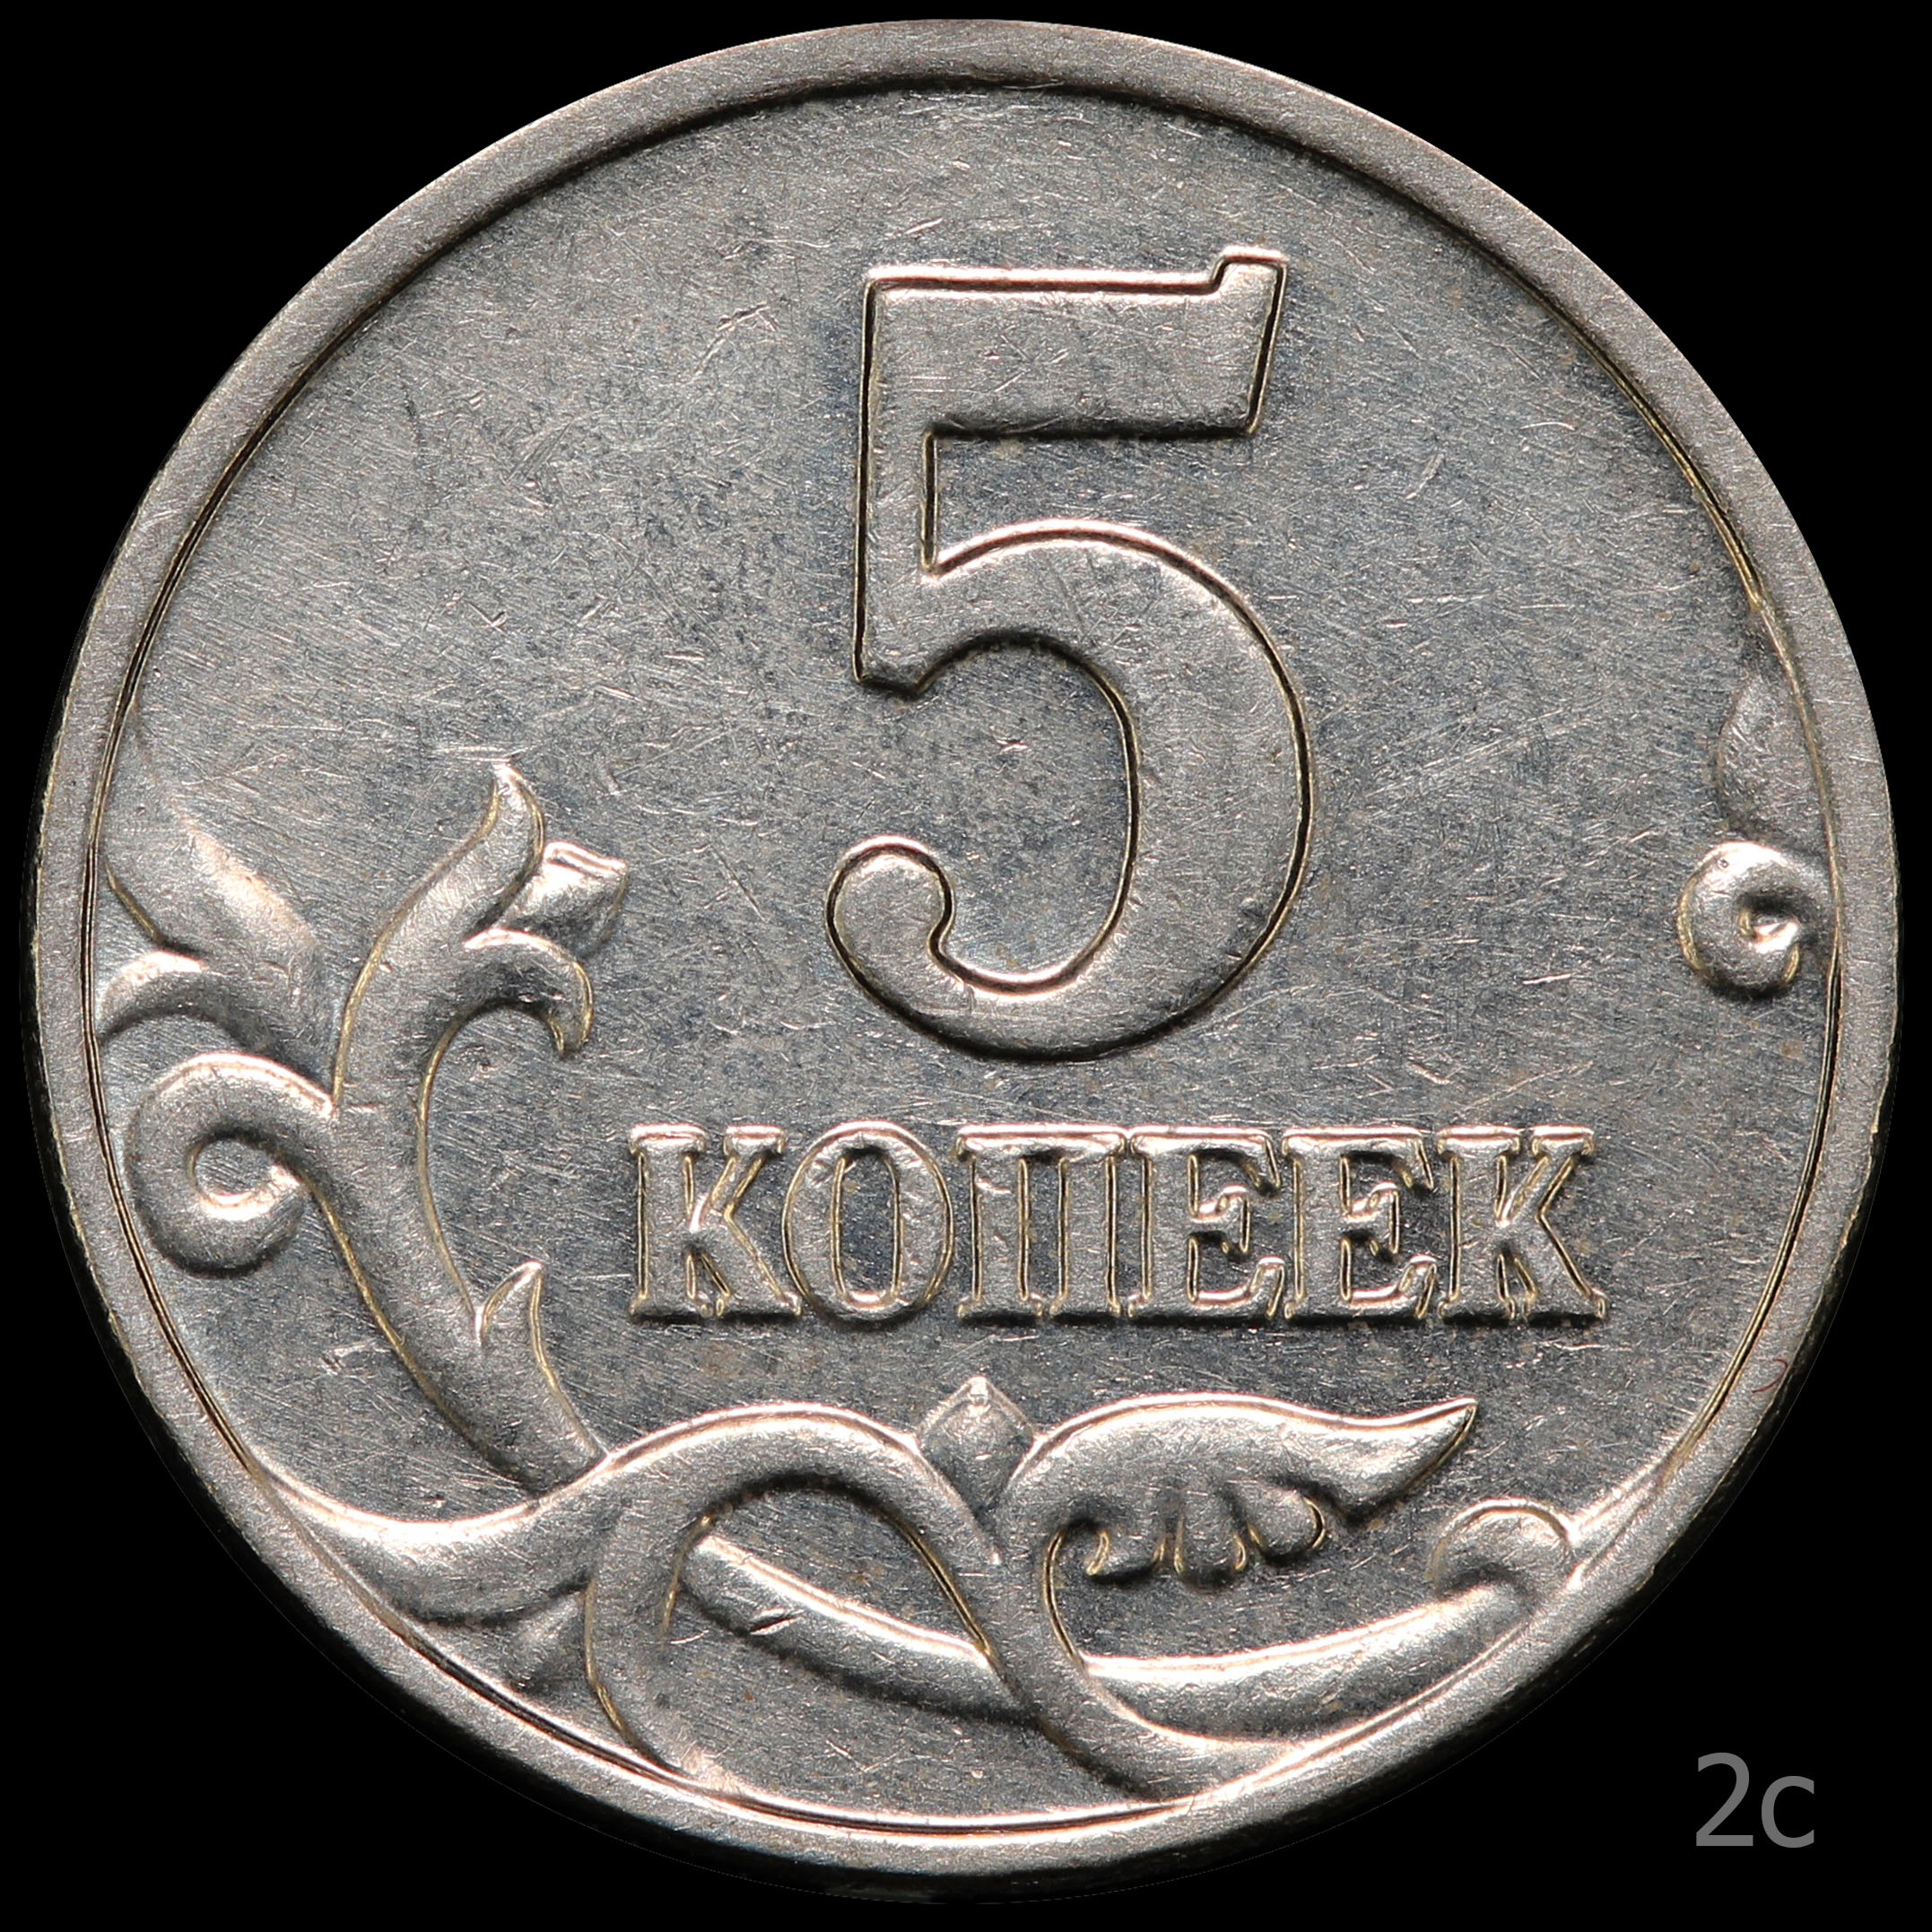 5 Копеек 2003. 5 Копеек 2003 обычная. Штемпель для монет.